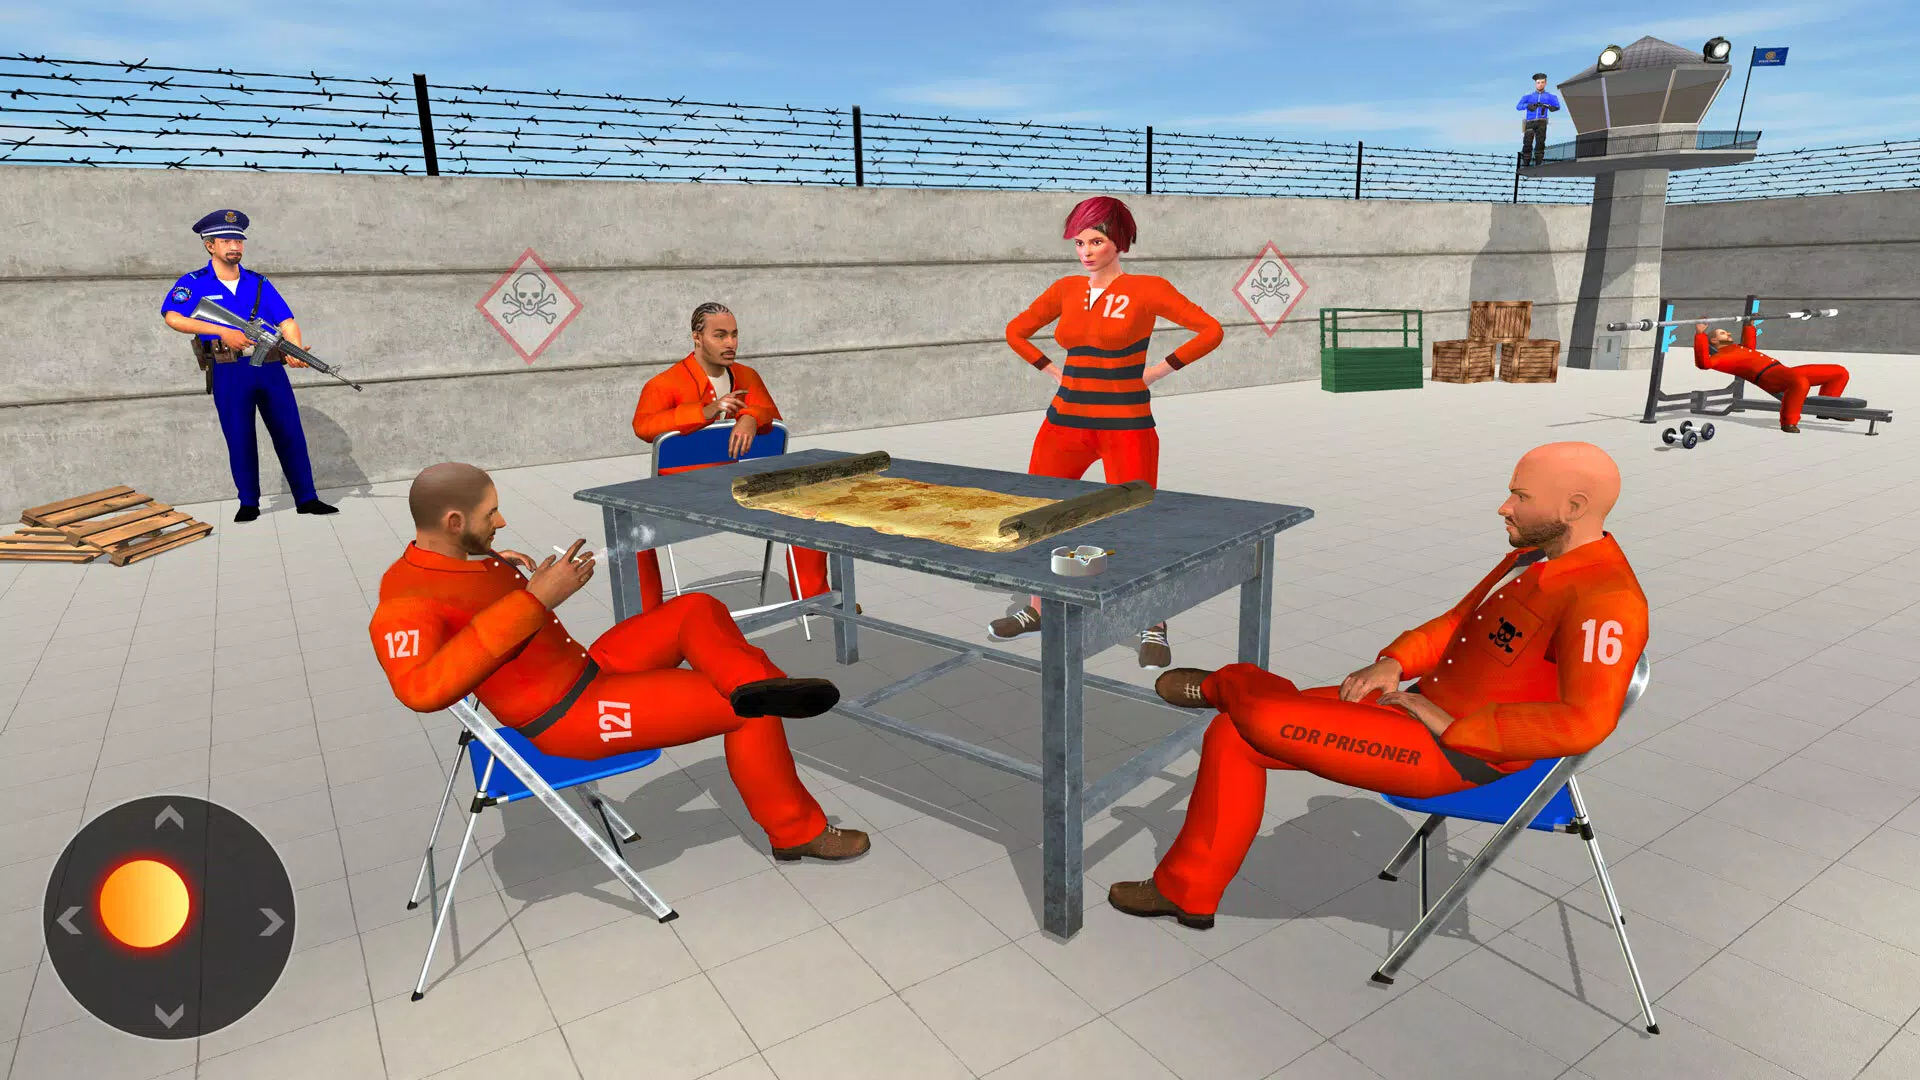 Grand Jail Prison: Escape Game Free Download - 9Game